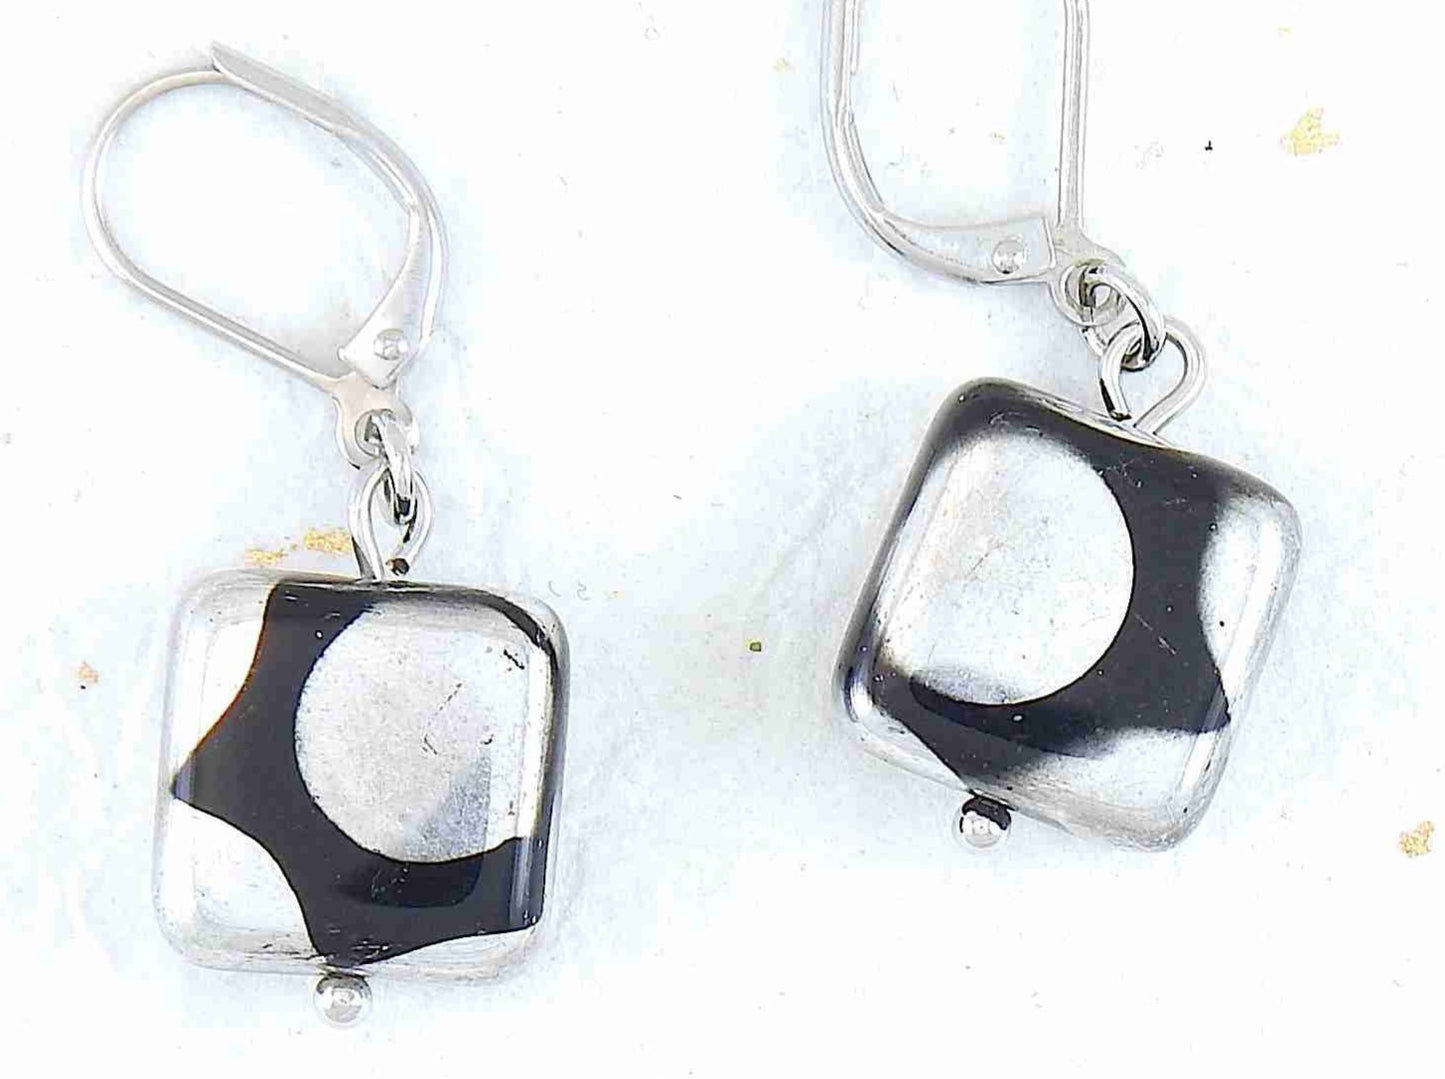 Boucles d'oreilles courtes petits carrés en verre tchèque brillant noir à gros pois argentés / cuivrés / multicolores, crochets à levier acier inoxydable